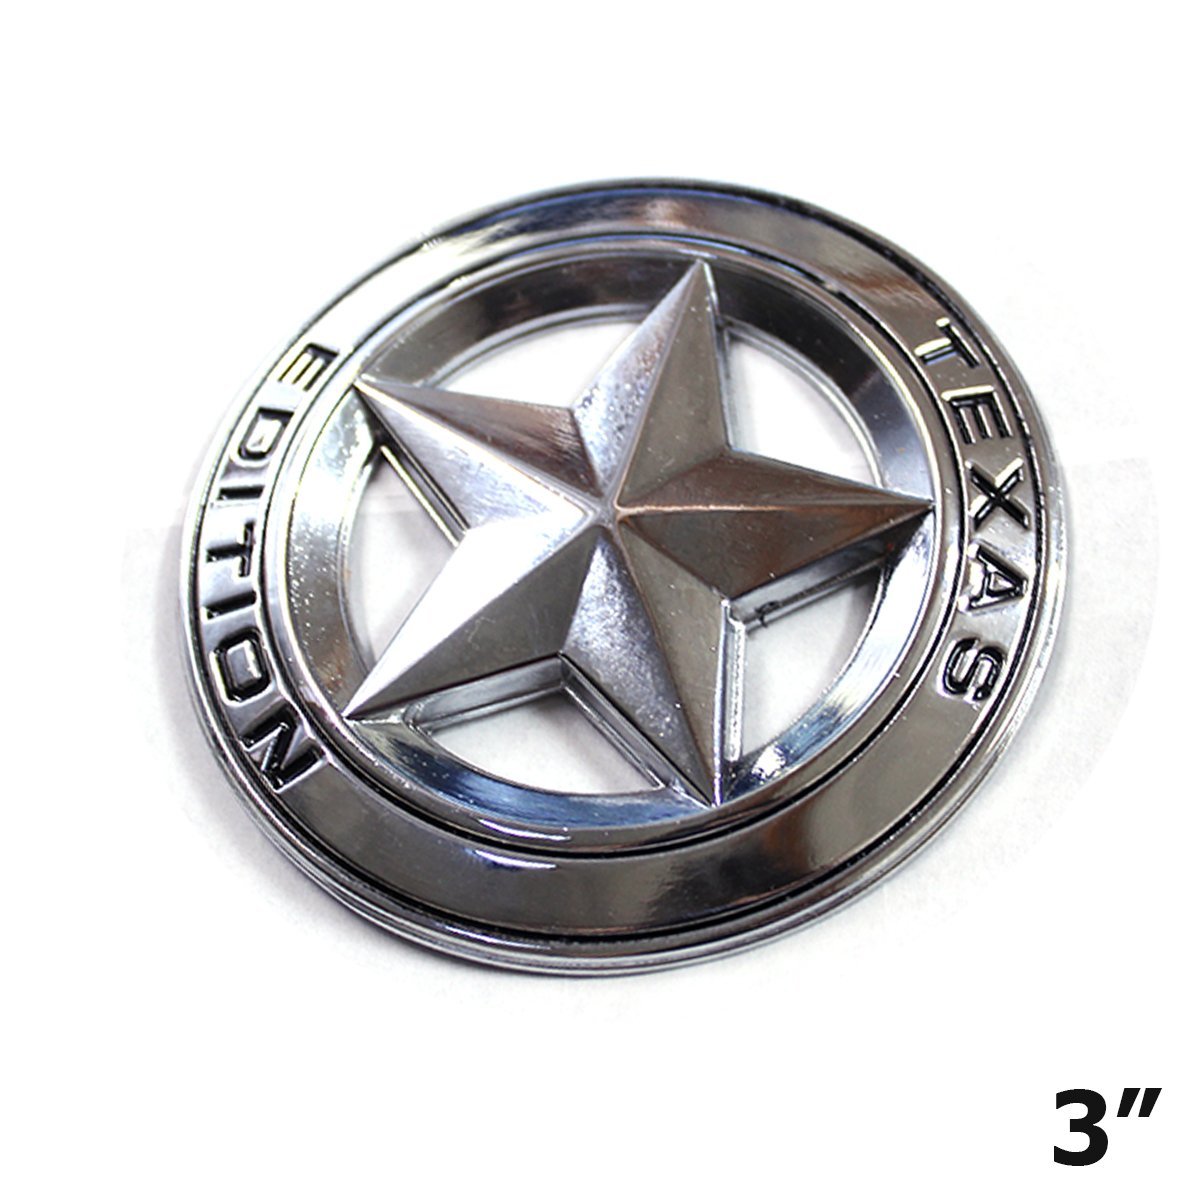 LIMITED EDITION Logo 3D Car Sticker Plating Metal Emblem Badge